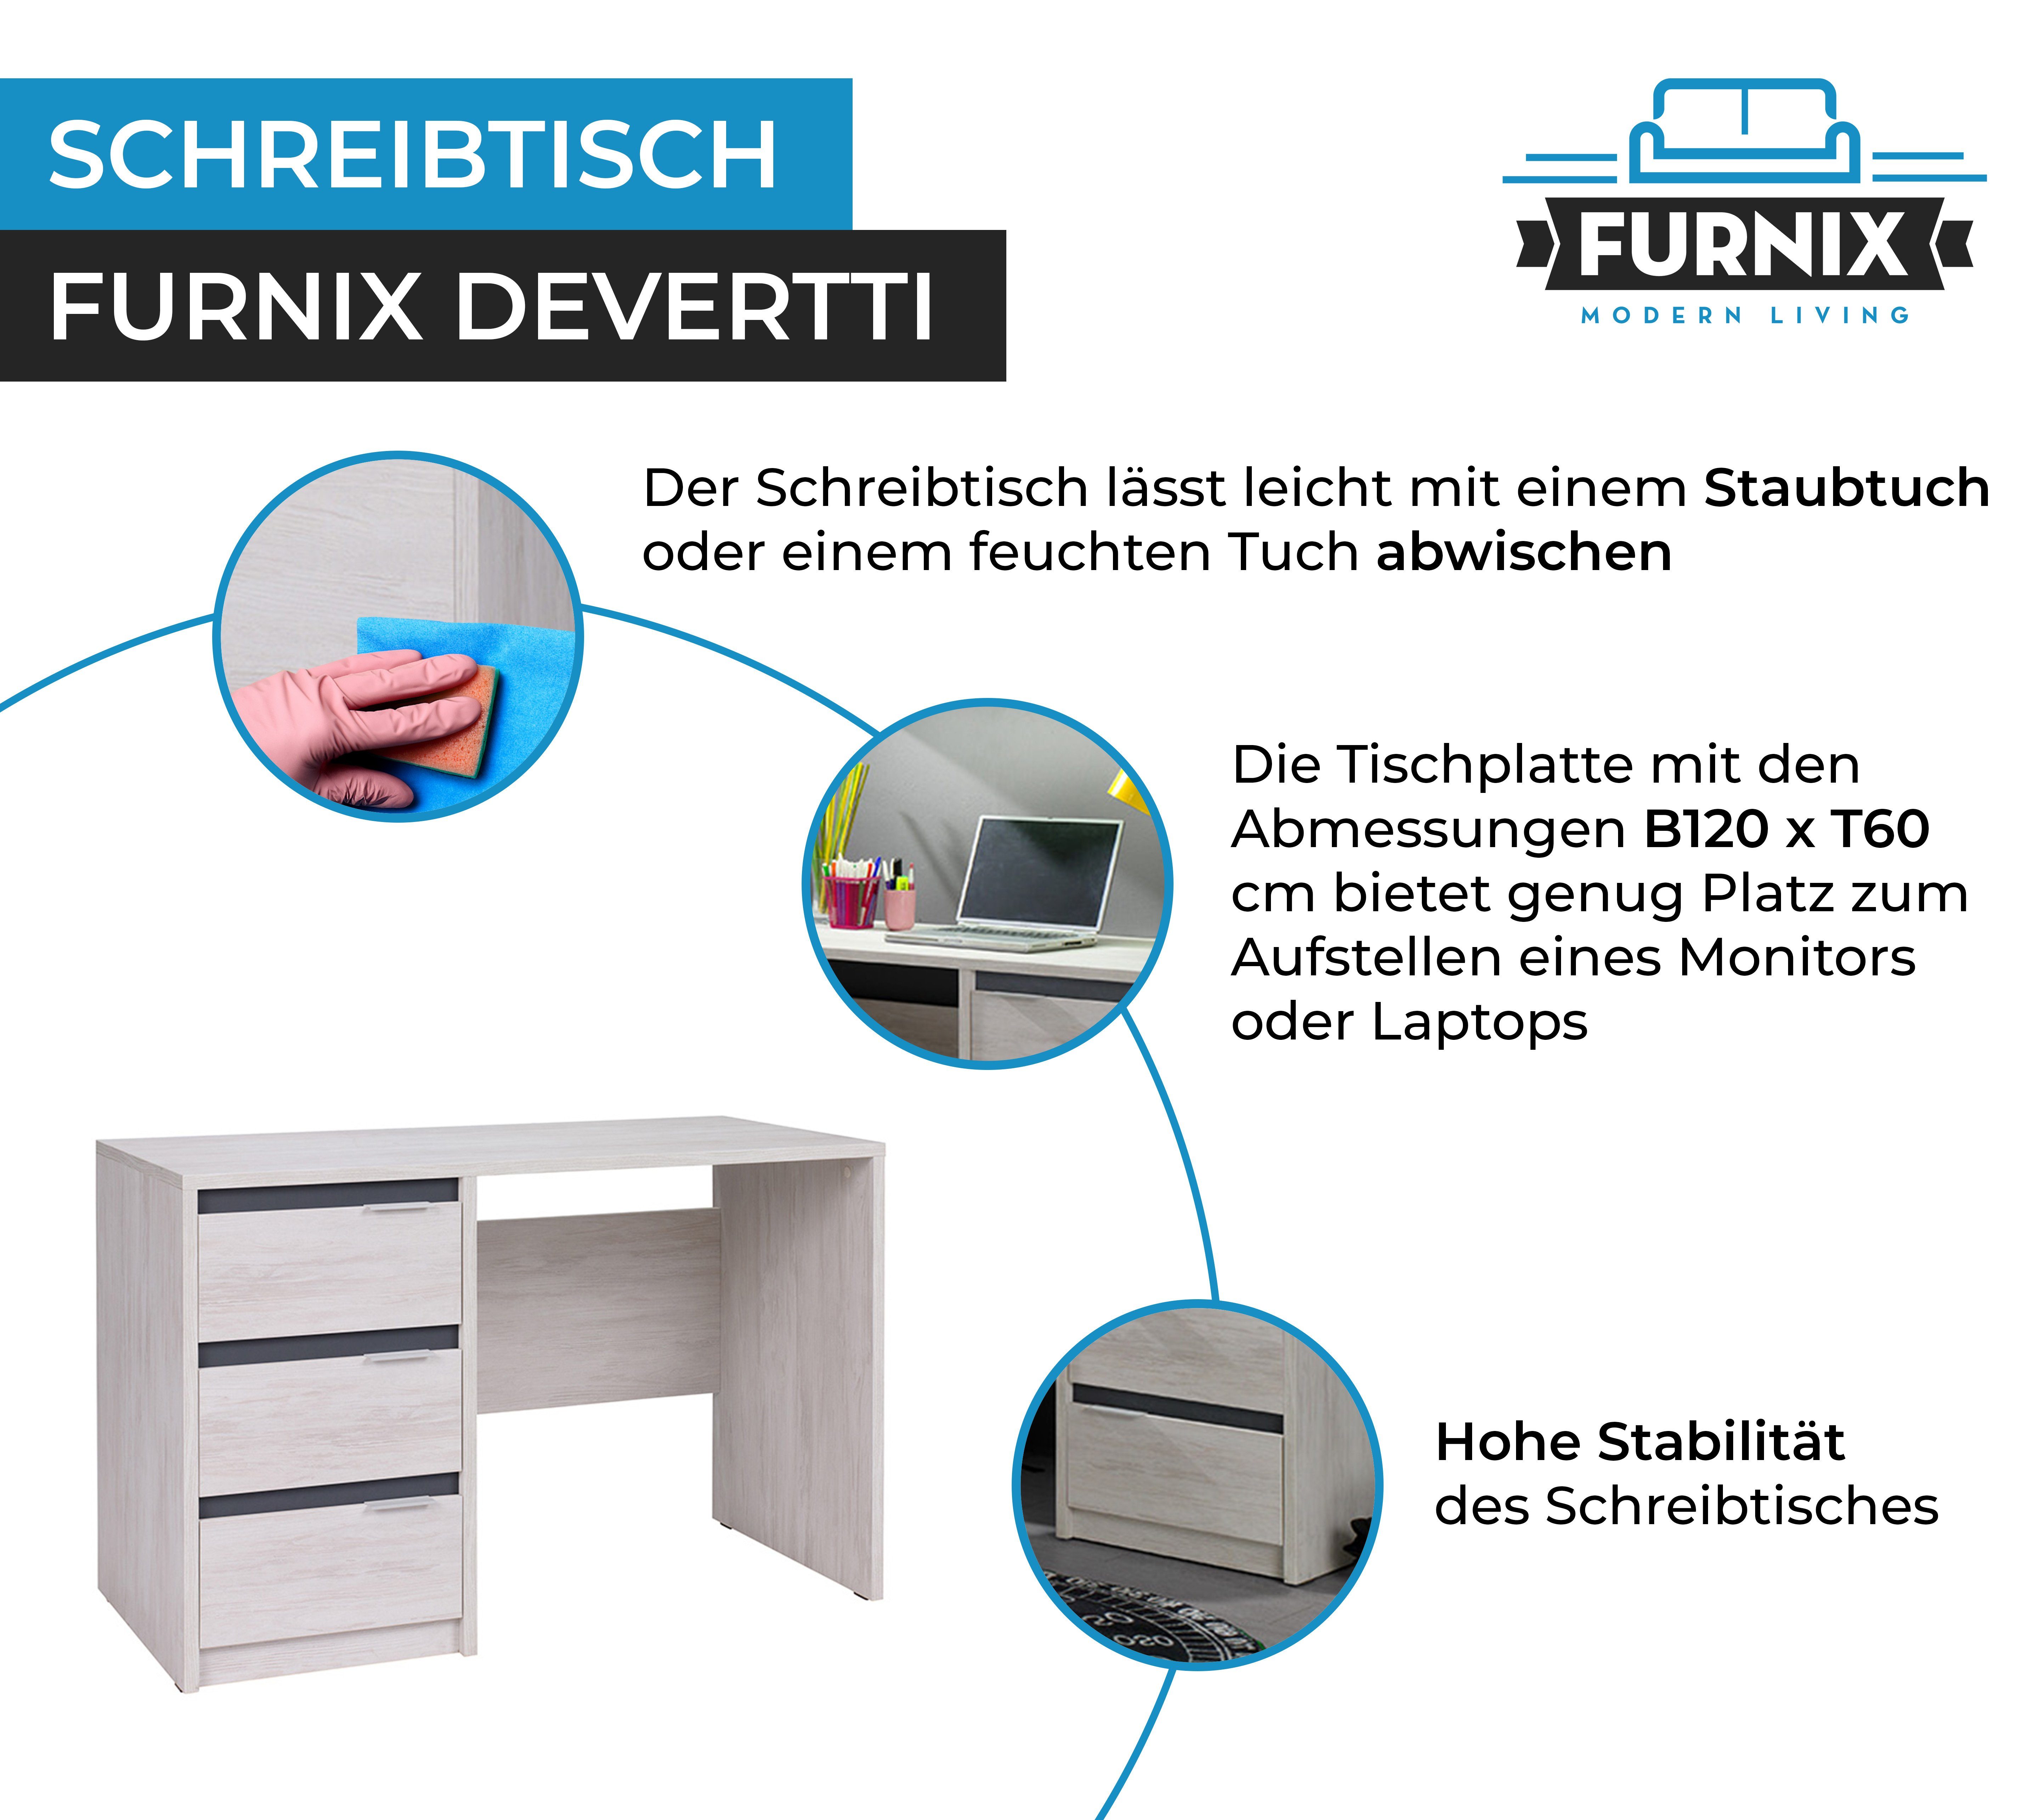 Furnix Schreibtisch DEVERTTI mit 3 cm Maße x x T60 Schubladen, B120 Glanz Weißeiche-Graphit H77